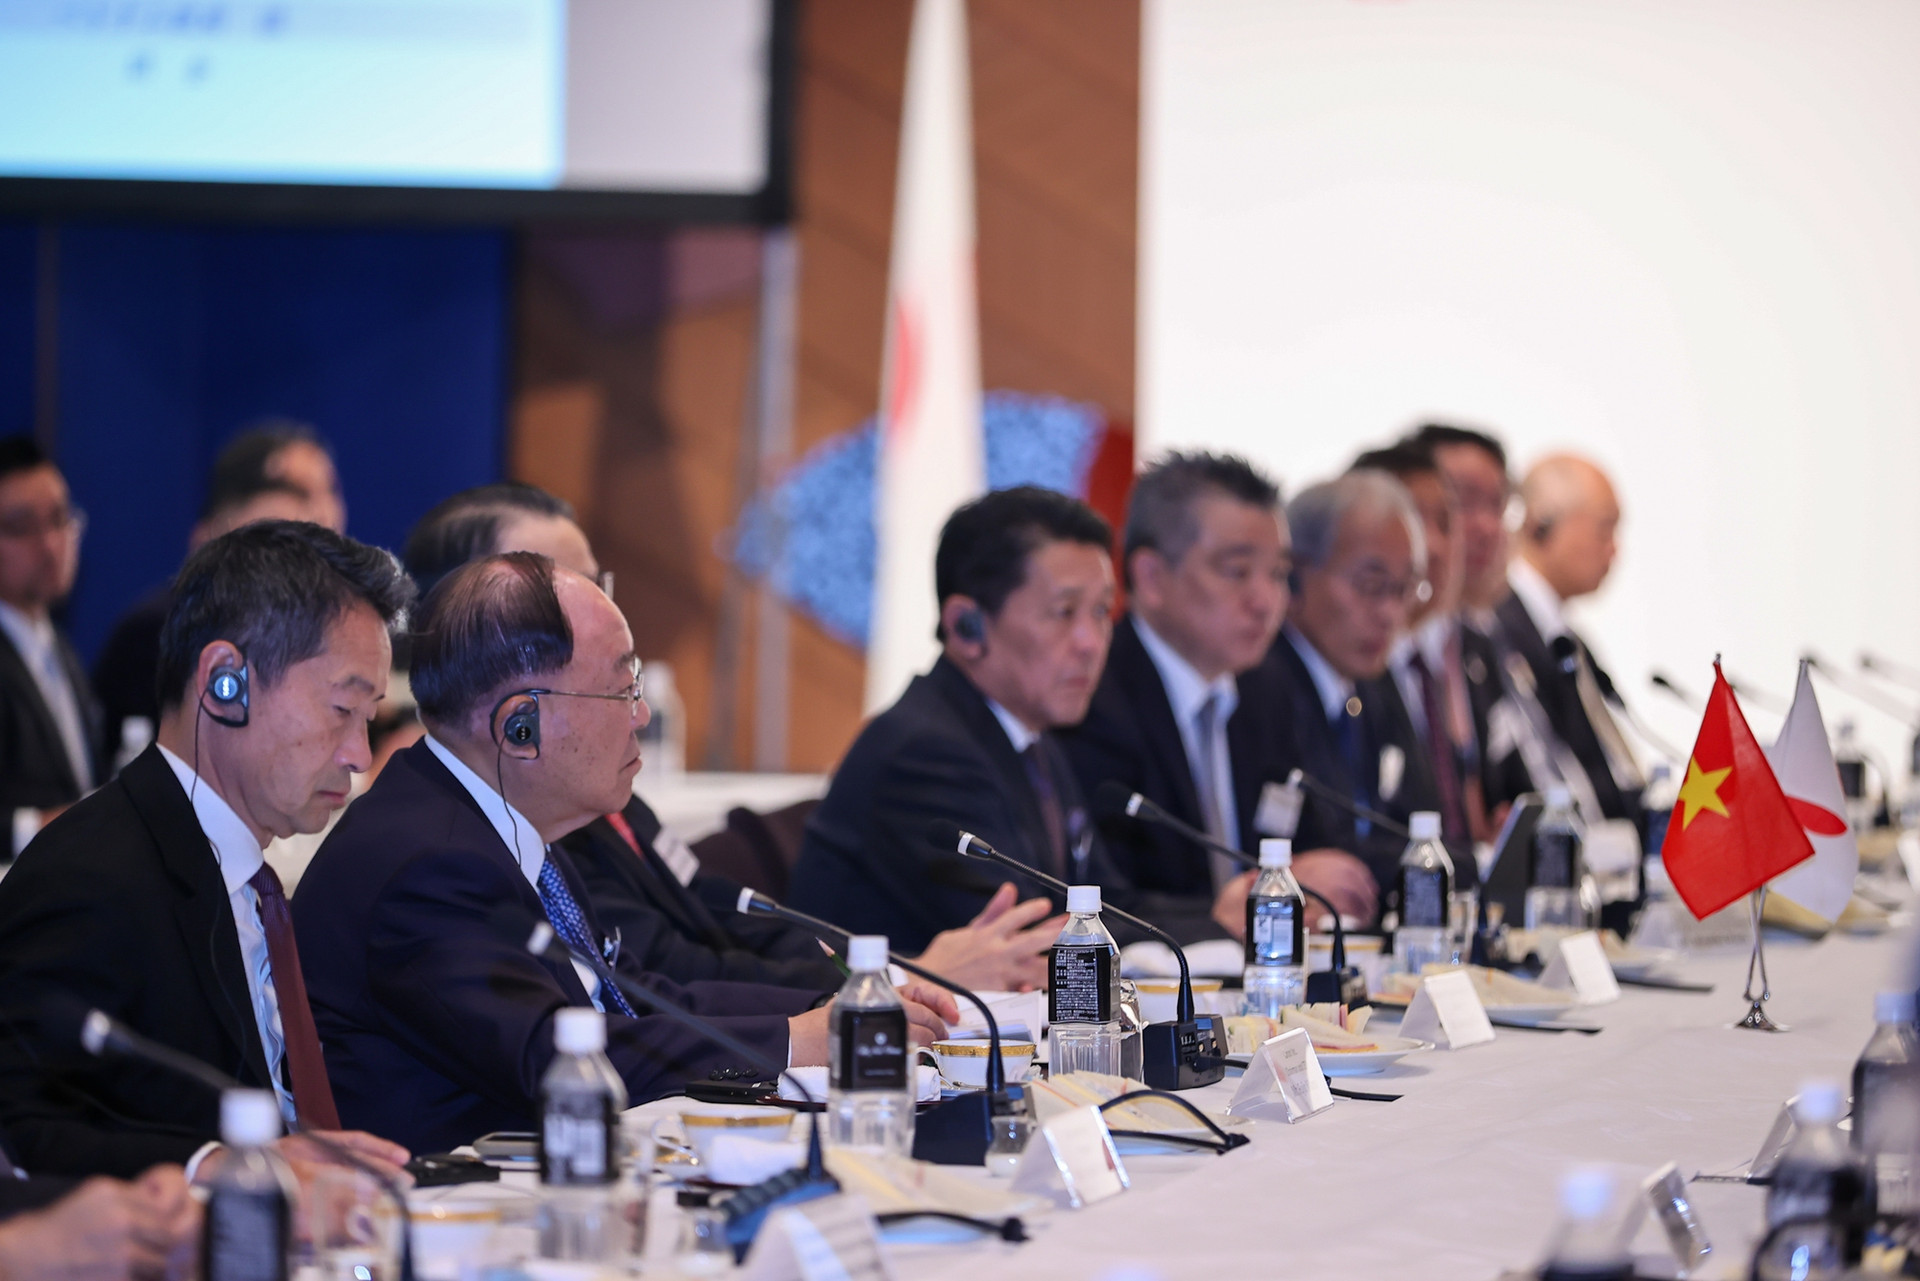 Thủ tướng tọa đàm với các tập đoàn hàng đầu Nhật Bản: Việt Nam là nơi an toàn trong cơn bão- Ảnh 4.